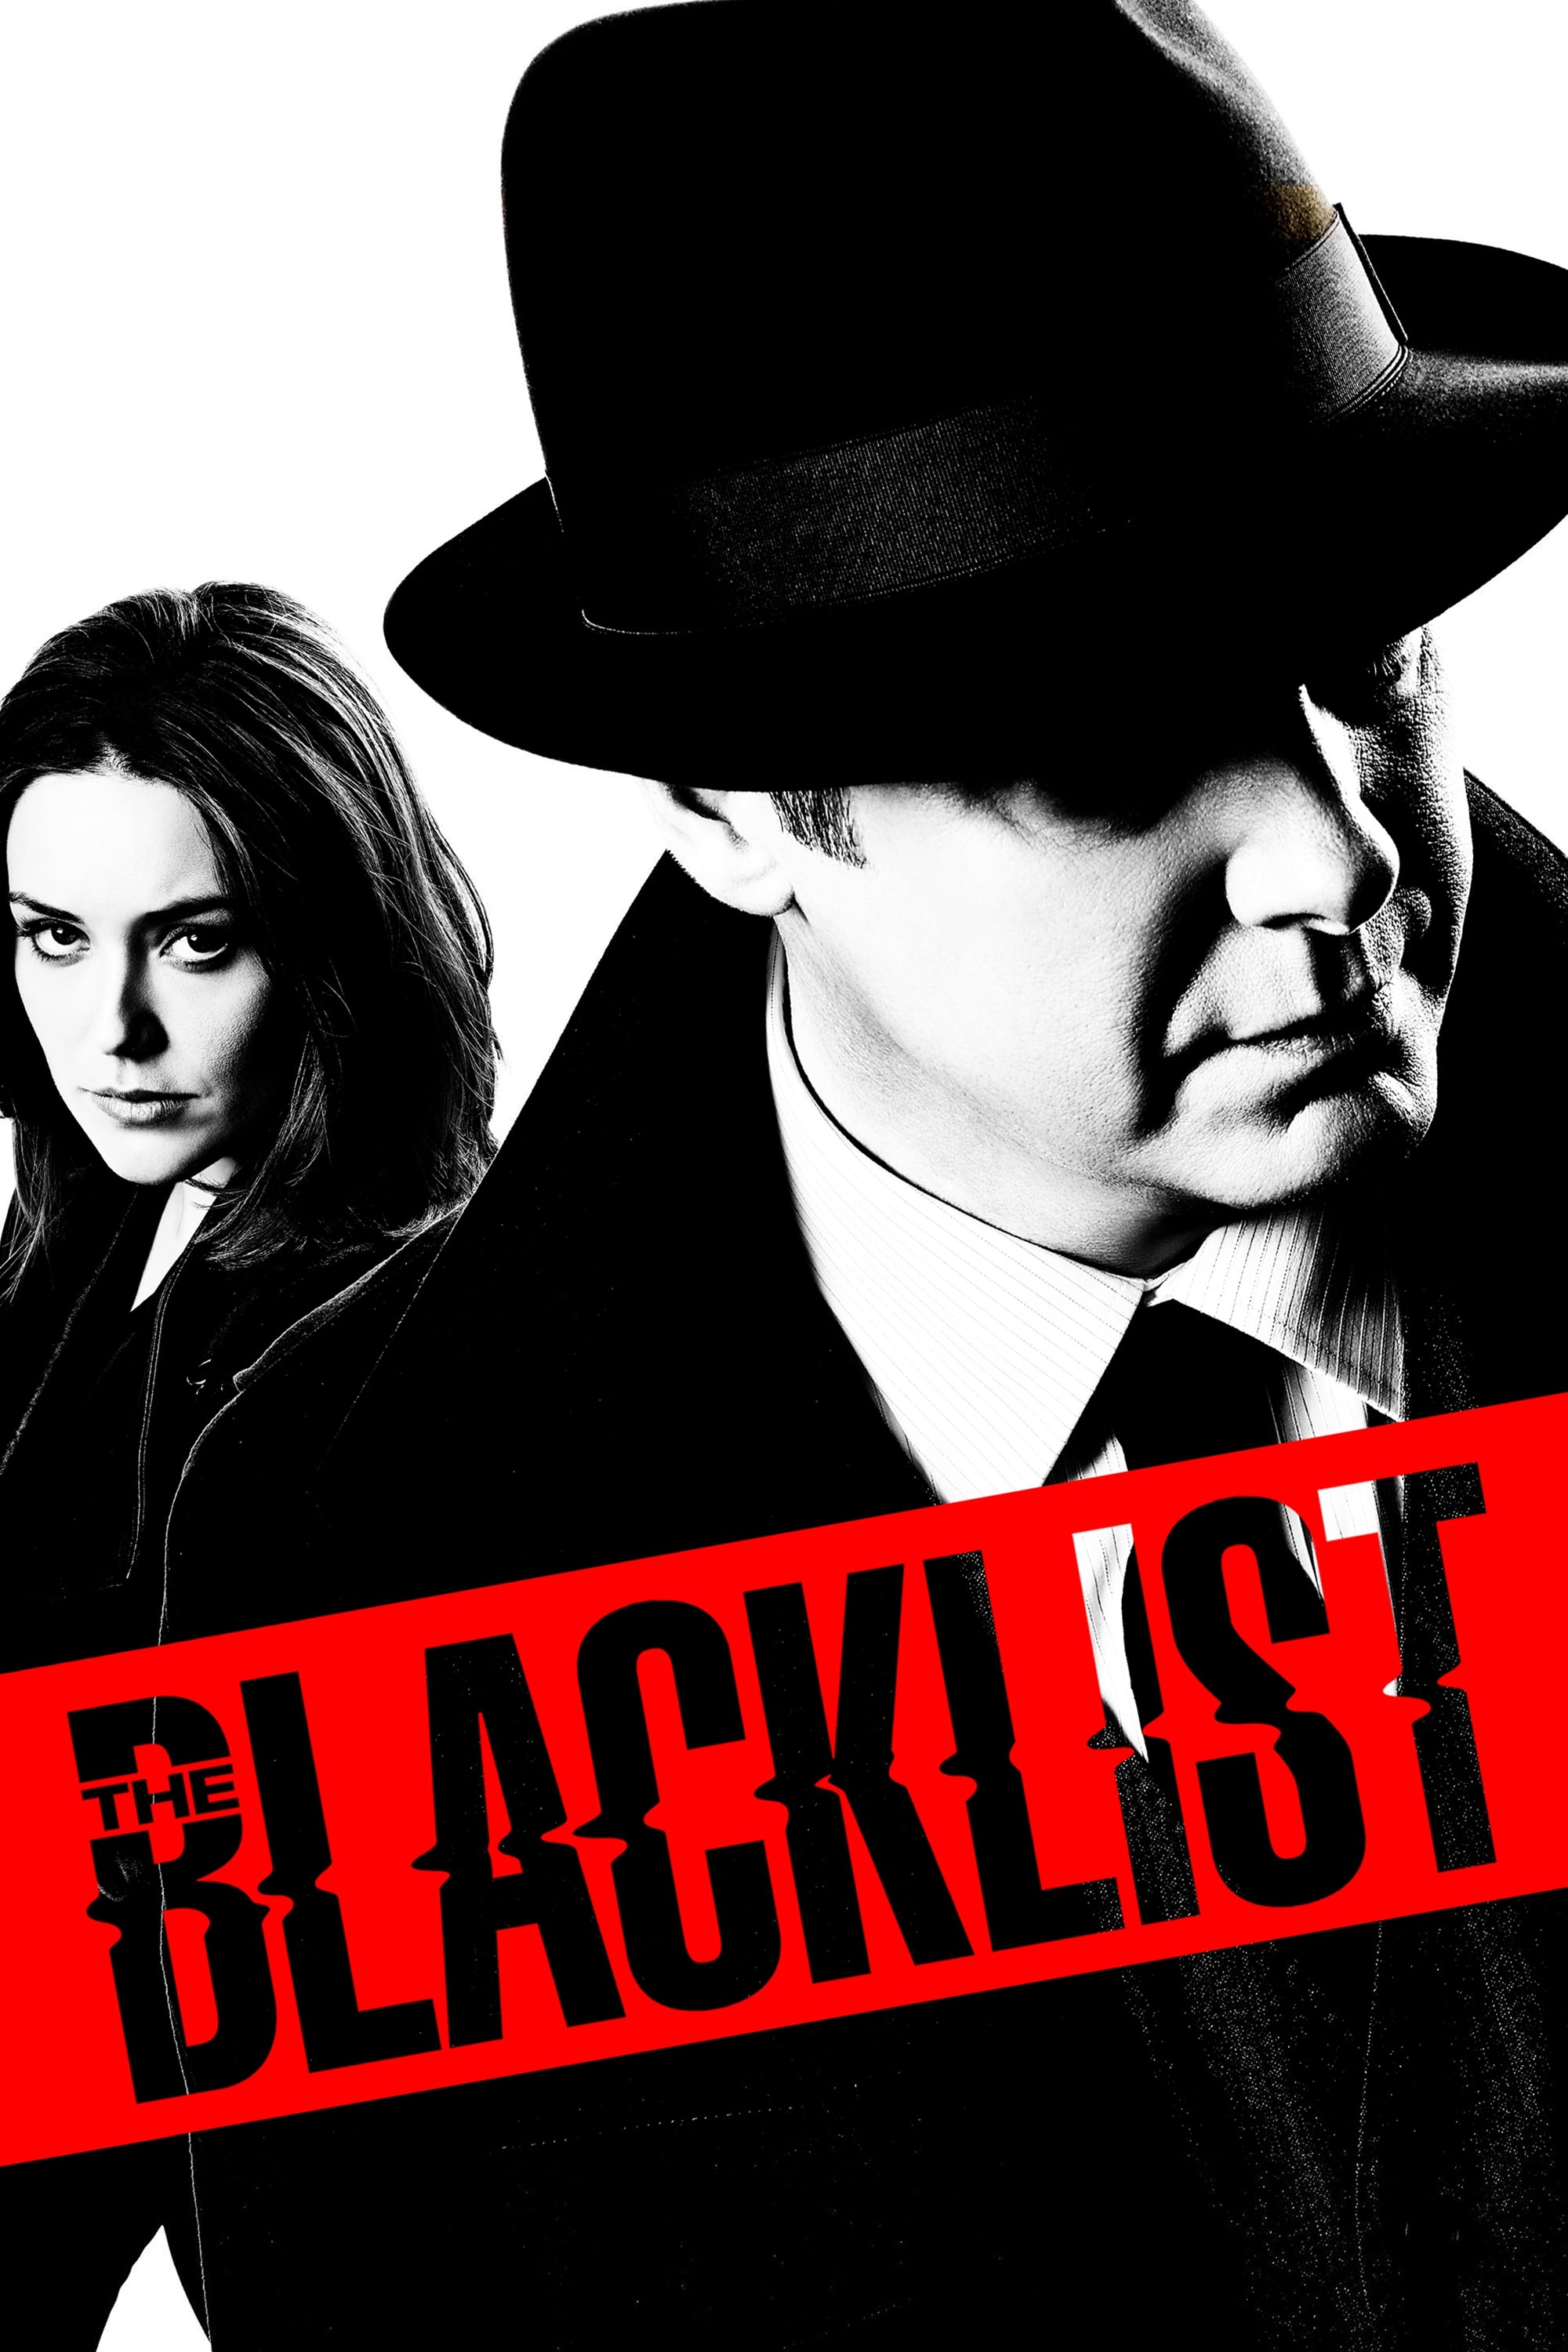 The Blacklist – Episode 9×19 Online Free